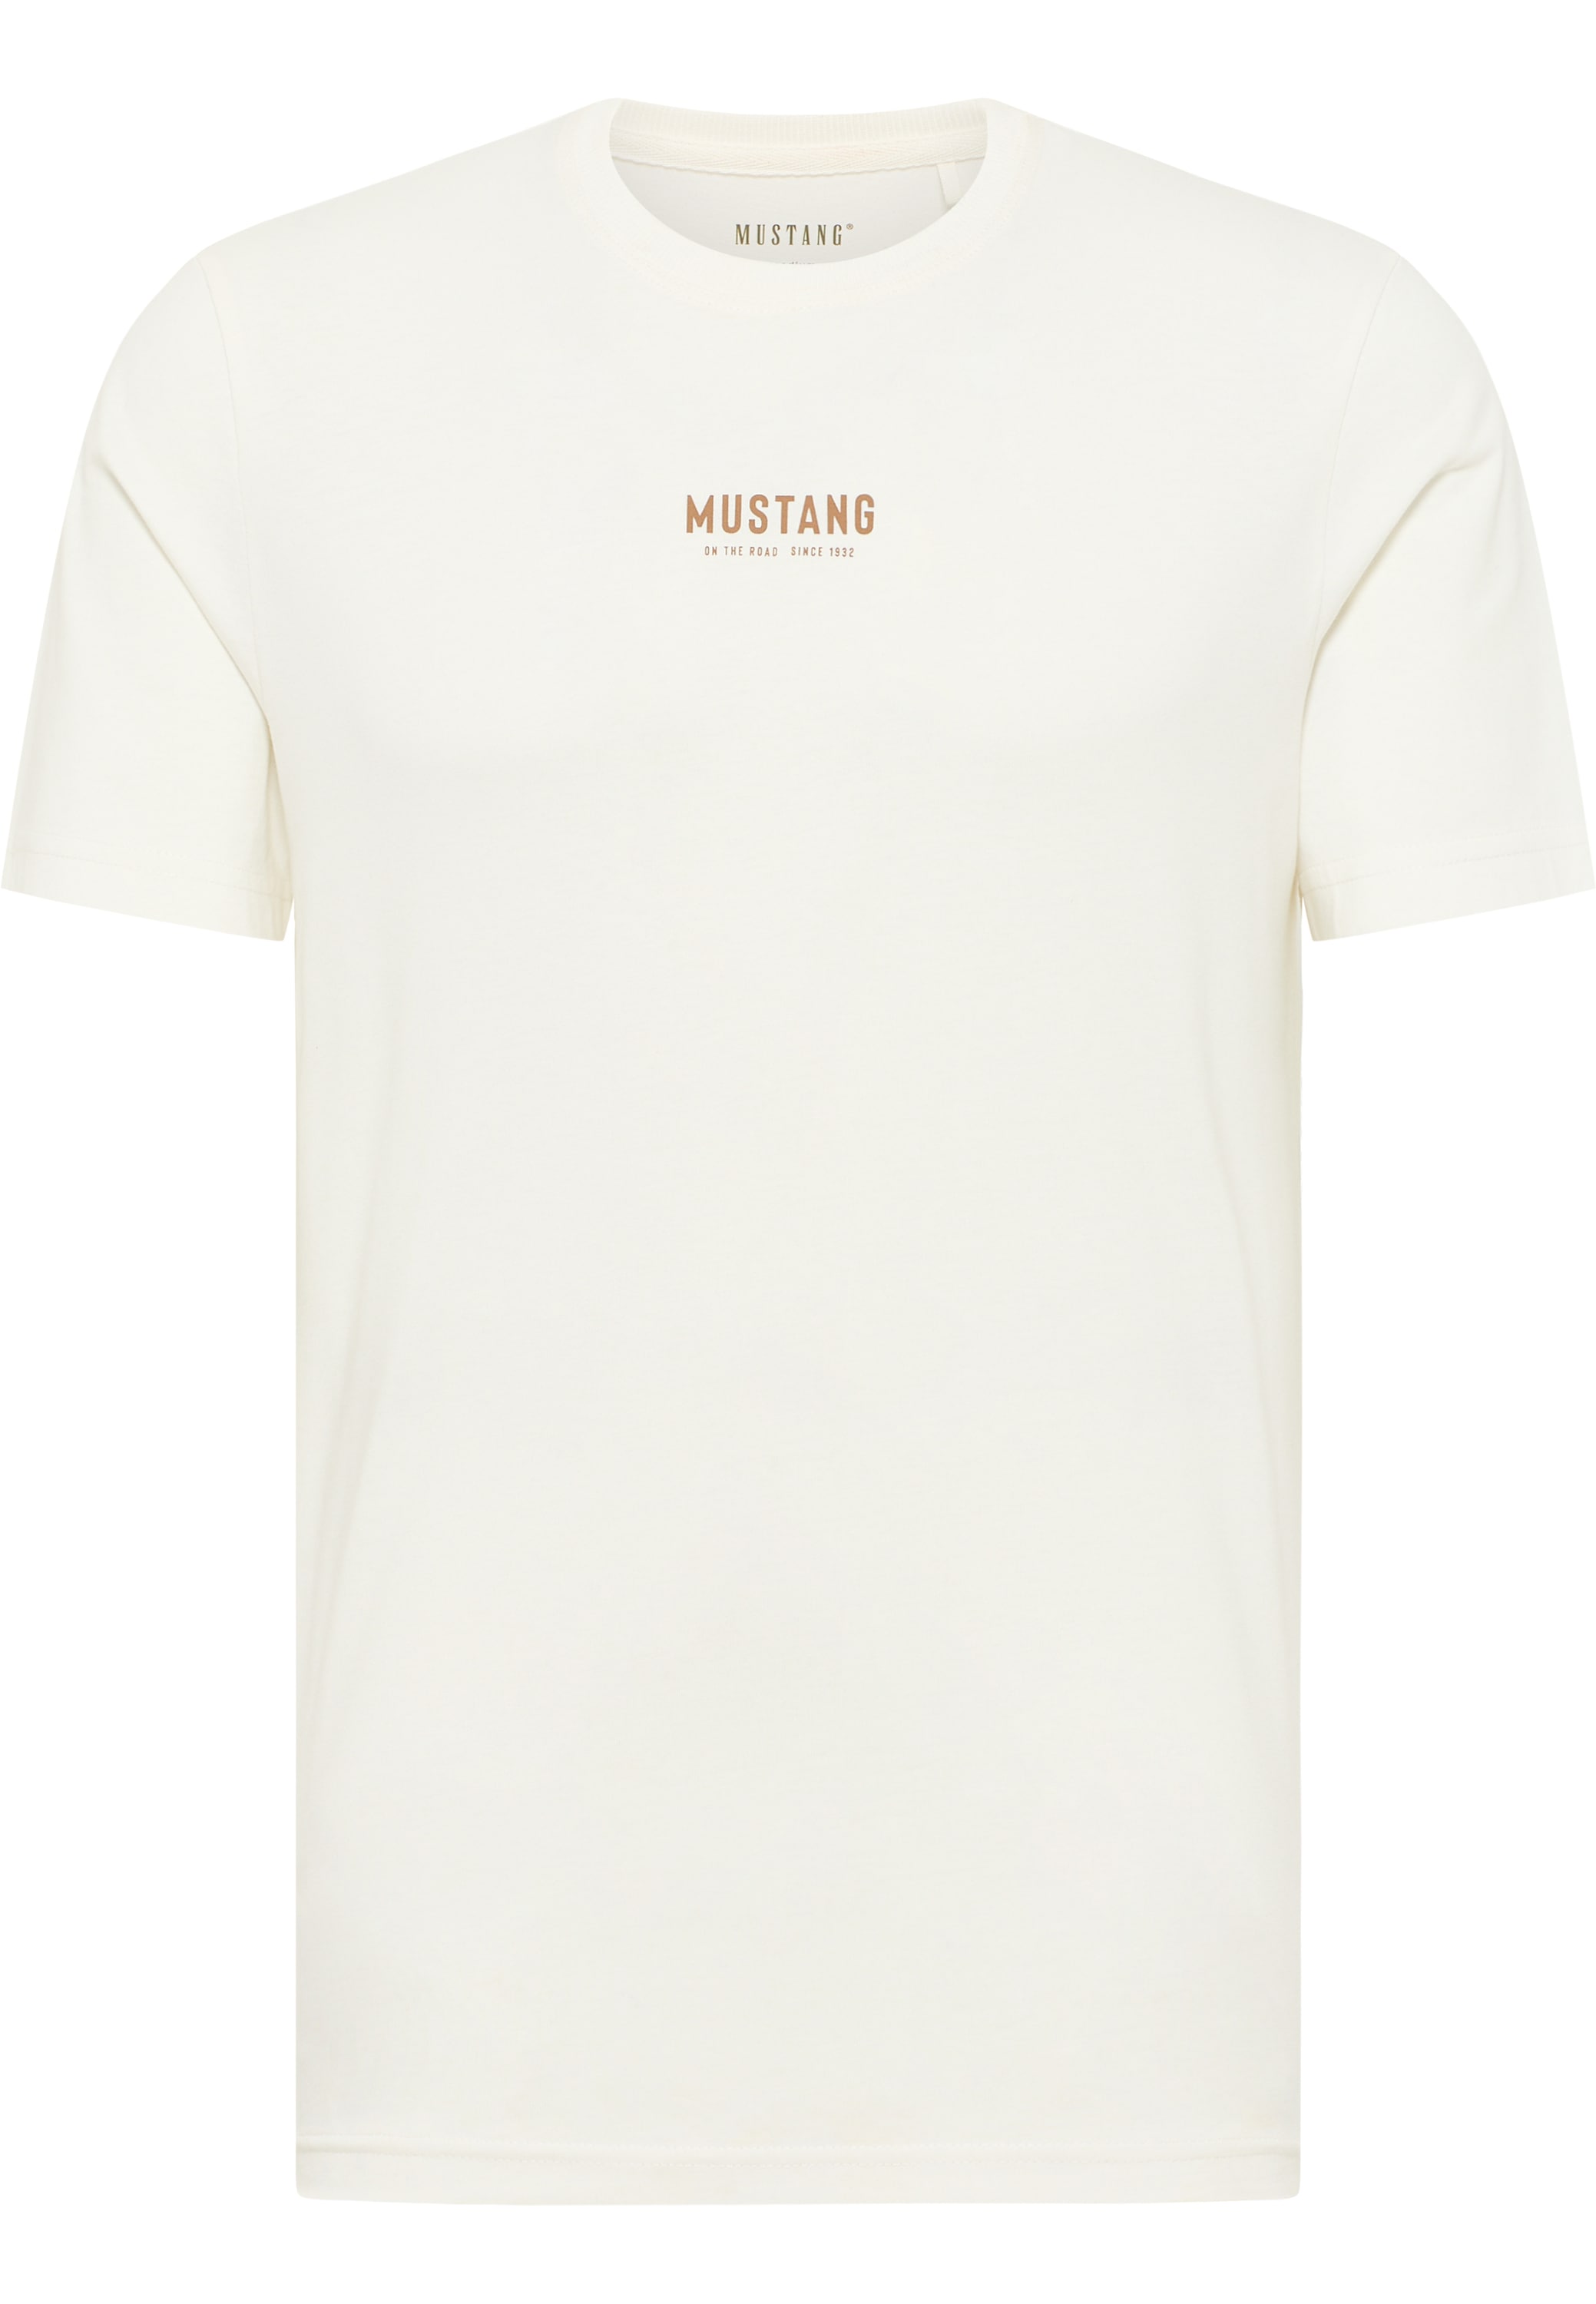 MUSTANG | Mustang BAUR für T-Shirt »Mustang ▷ T-Shirt T-Shirt T-Shirt«,